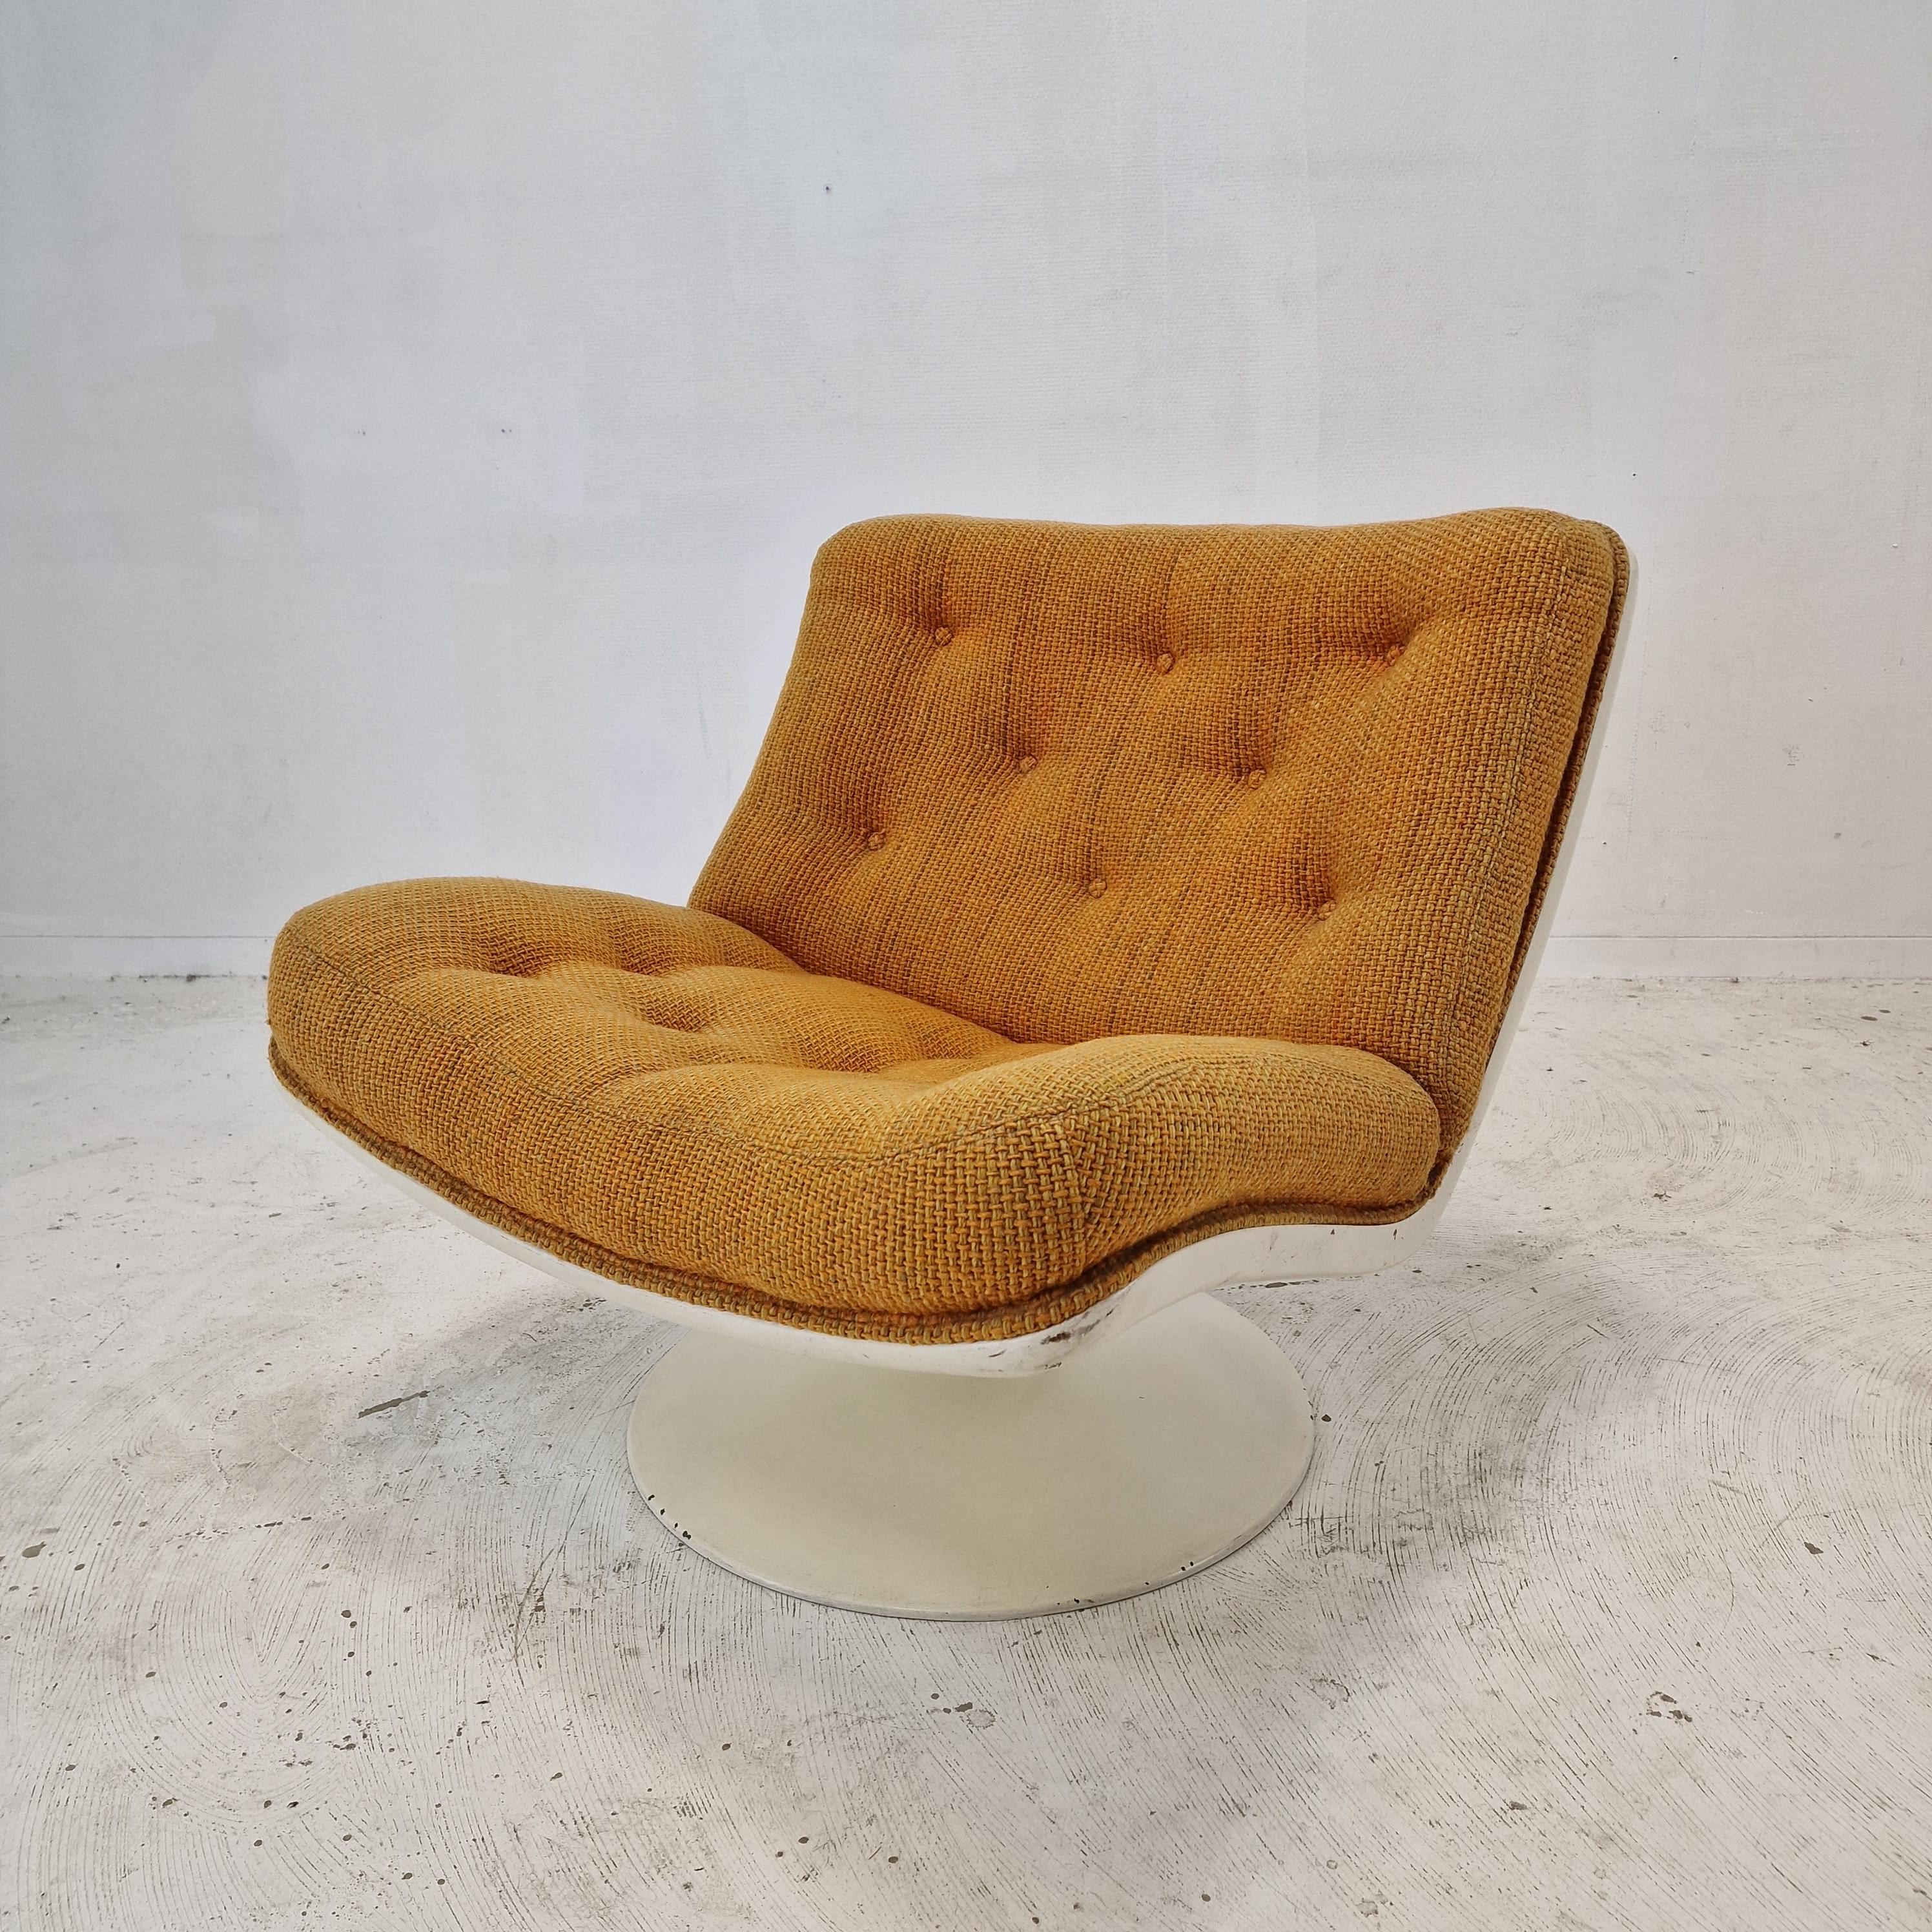 Très jolie et confortable chaise longue 975 conçue par le célèbre Geoffrey Harcourt pour Artifort dans les années 70.

Cadre solide avec pied pivotant.  
La chaise est équipée d'un tissu en laine de haute qualité, de couleur orange. 
Il présente les